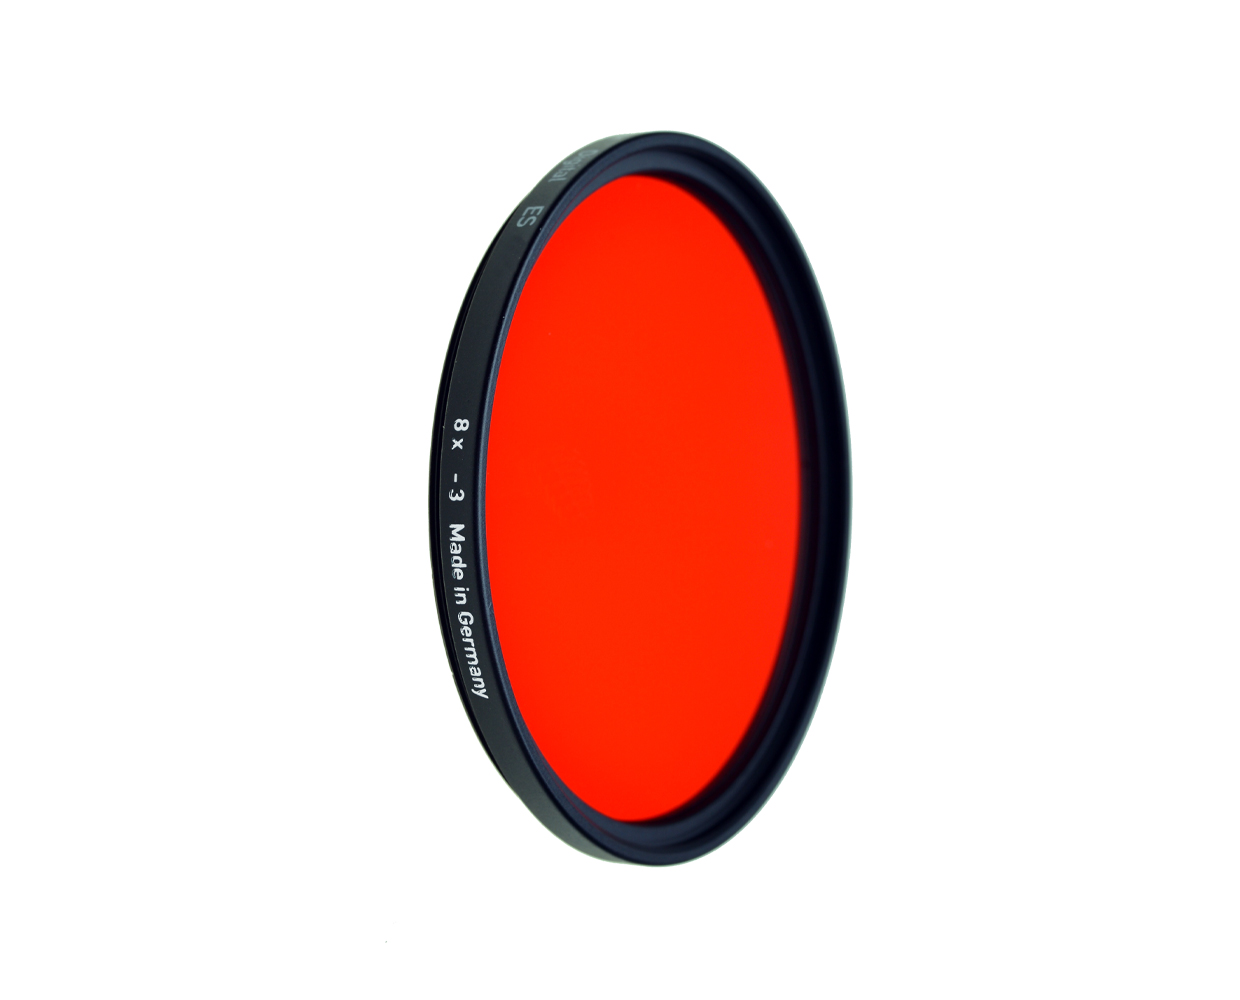 Heliopan black and white filter light red 25 diameter: 67mm (ES67)  BlackWhite Filters Filters Cameras  Accessories macodirect EN